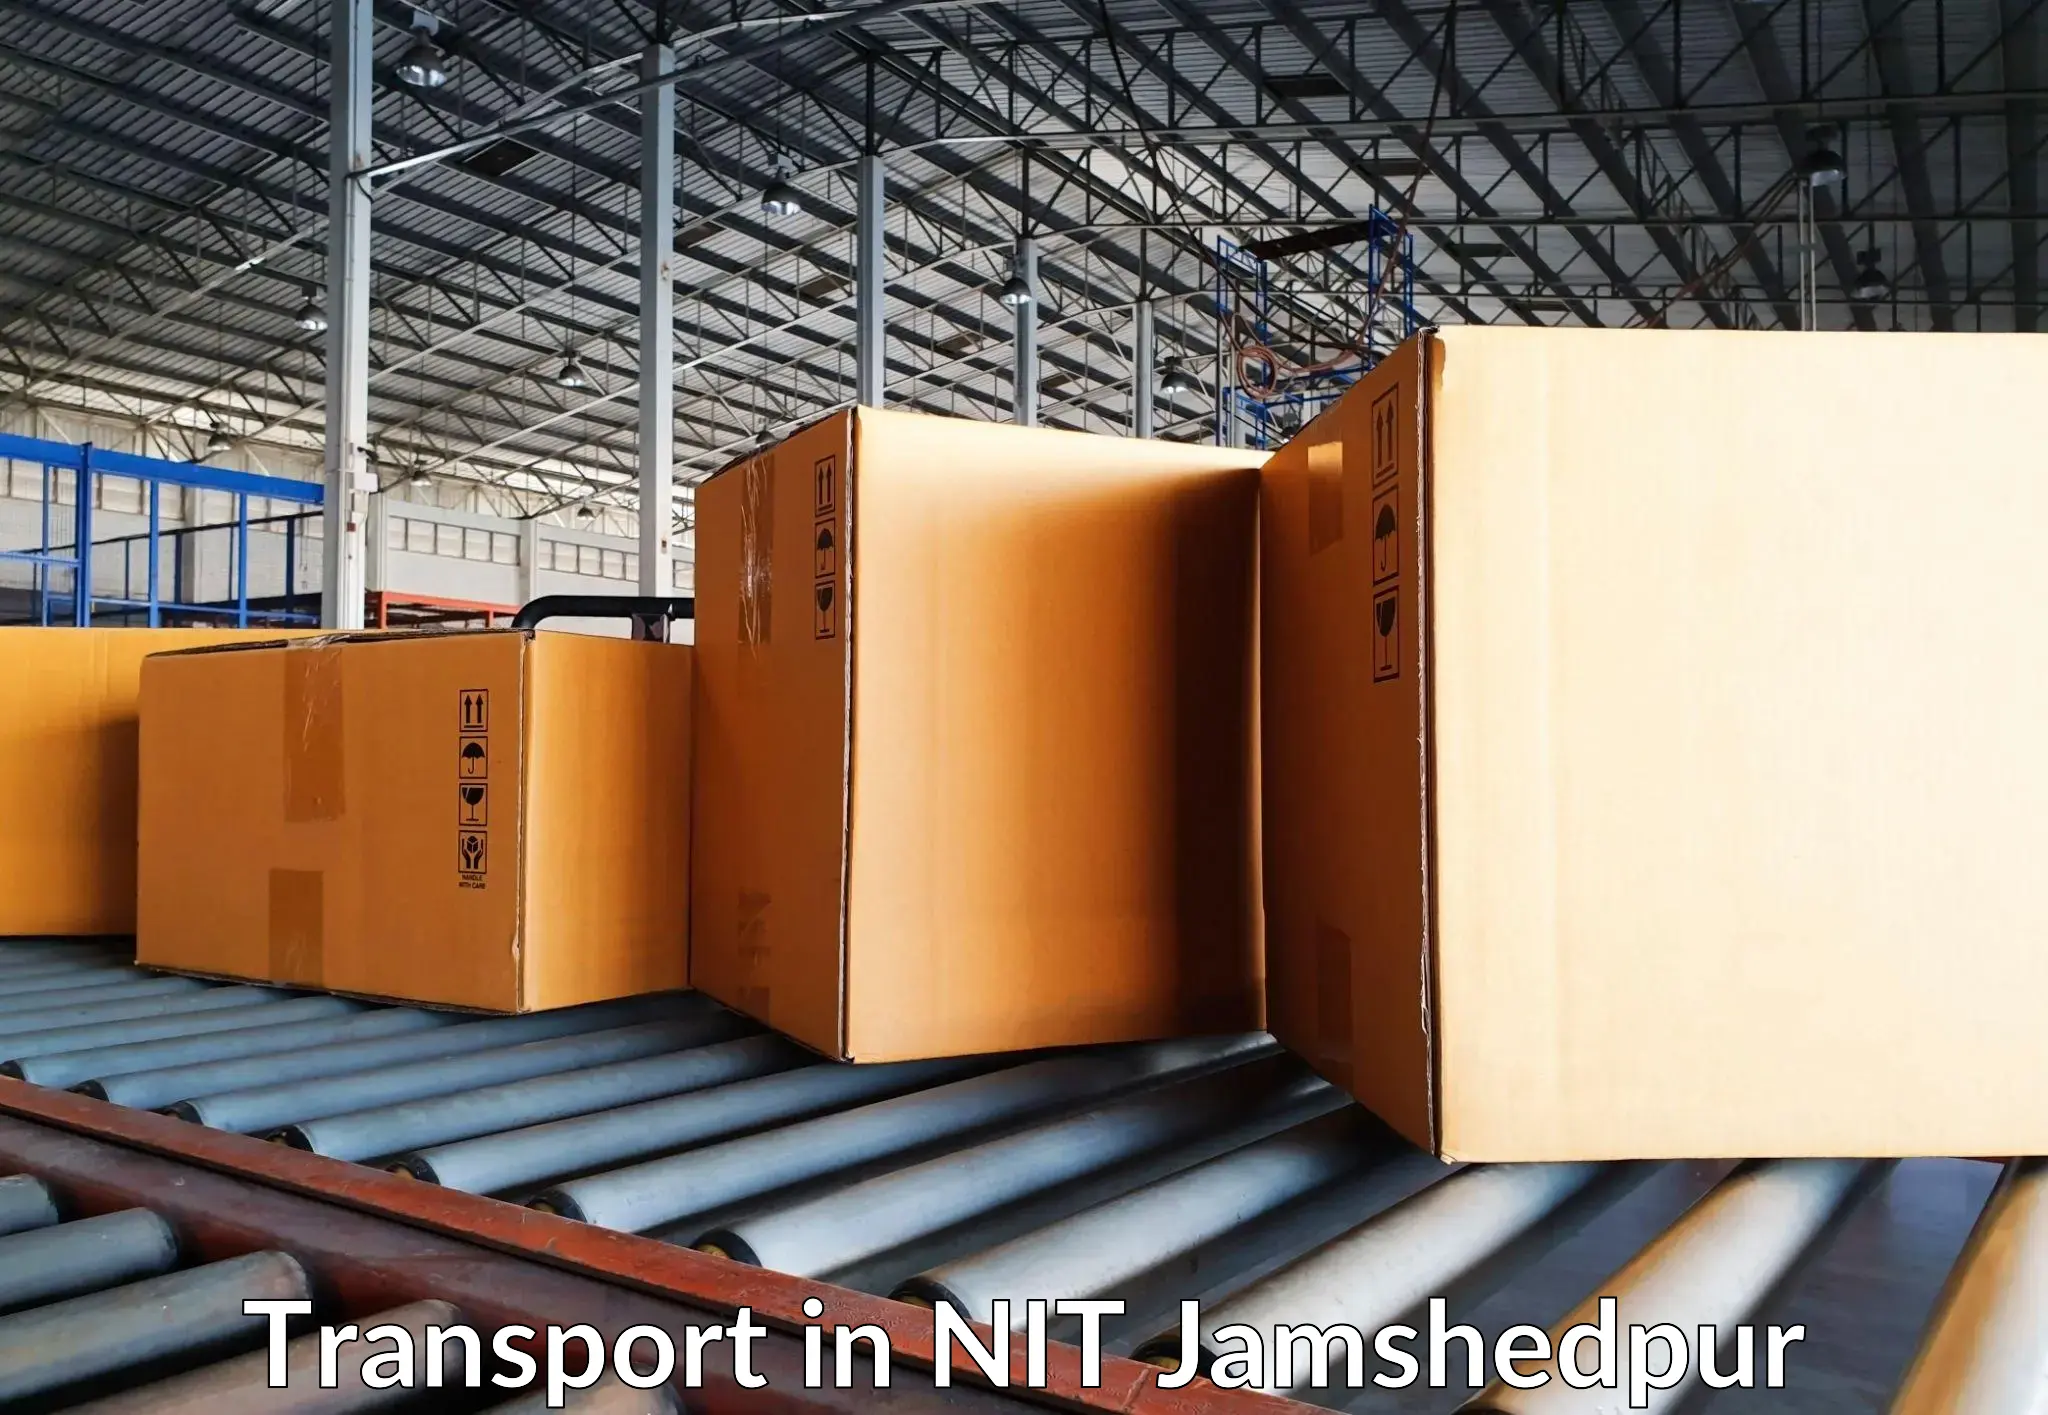 Transport services in NIT Jamshedpur